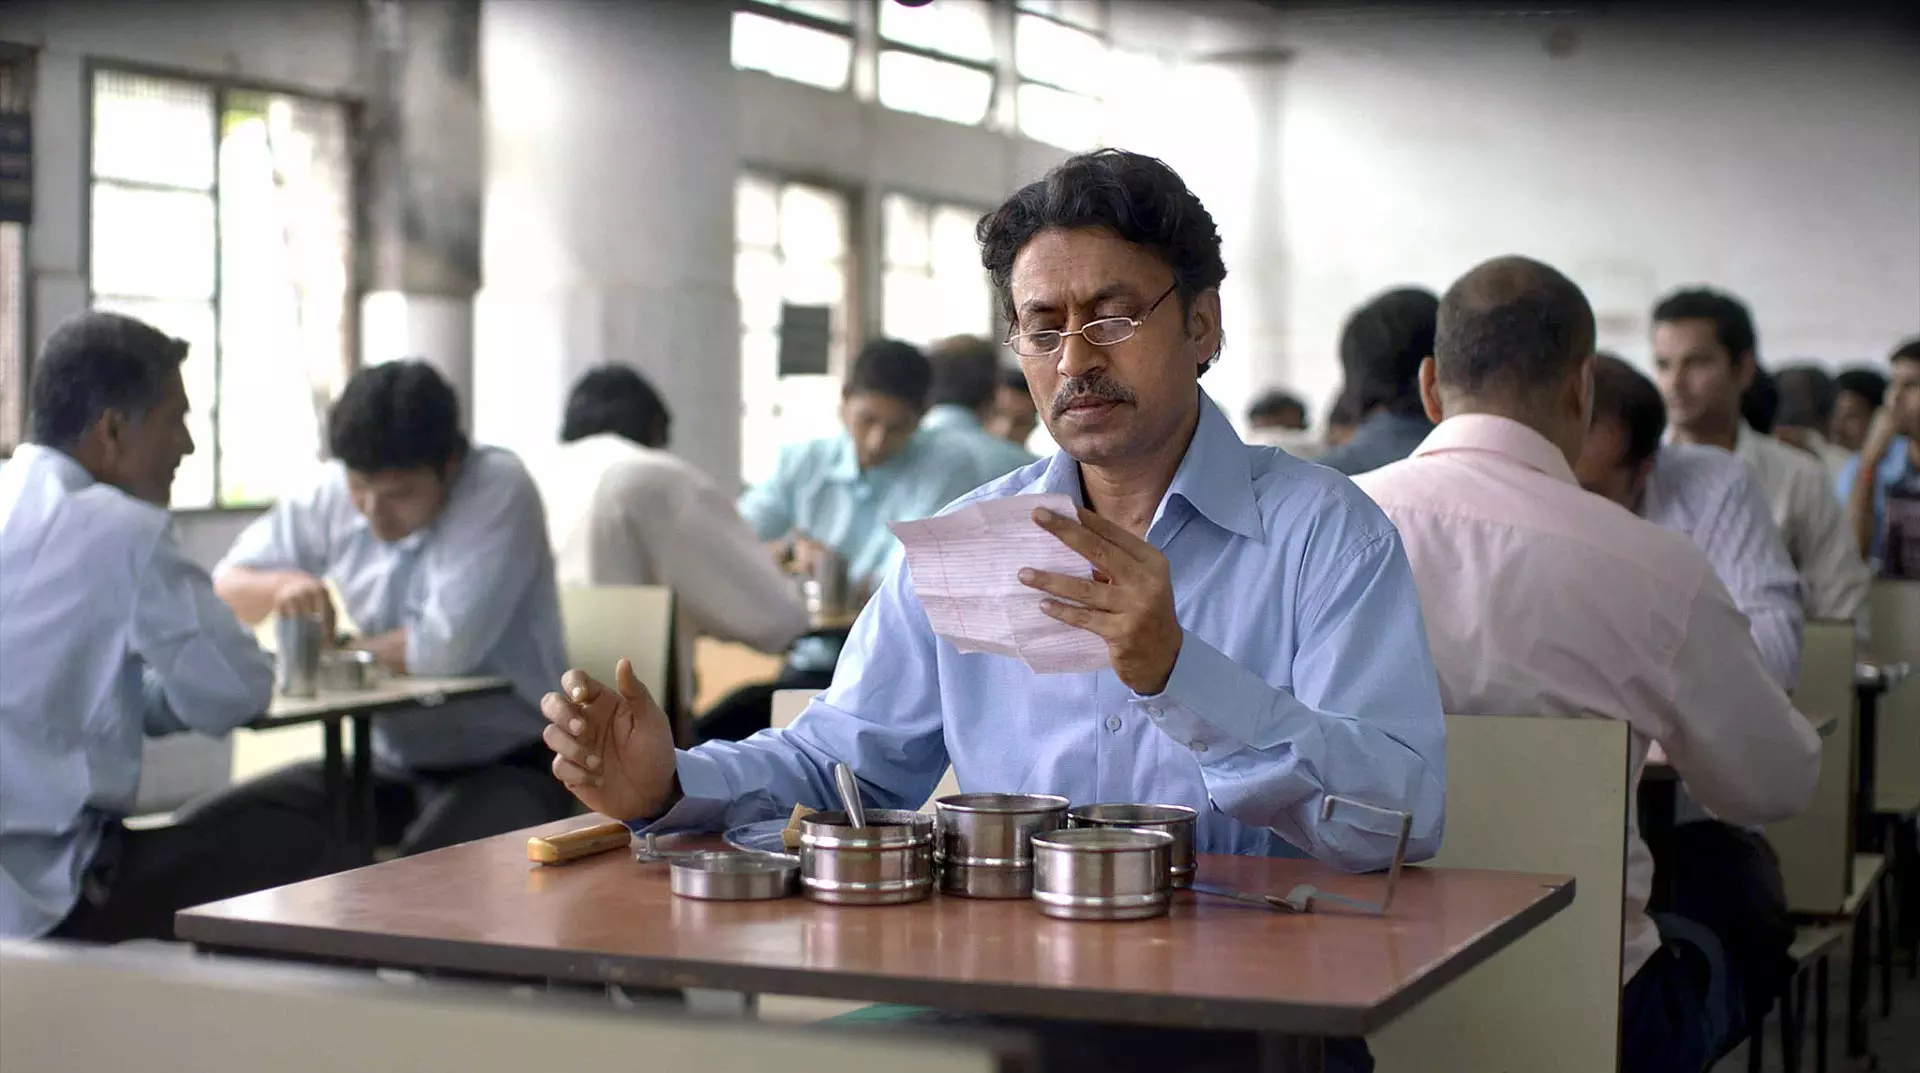 عرفان خان درحال خواندن نامه ای که داخل ظرف غذایش قرار داشته است در فیلم ظرف ناهار